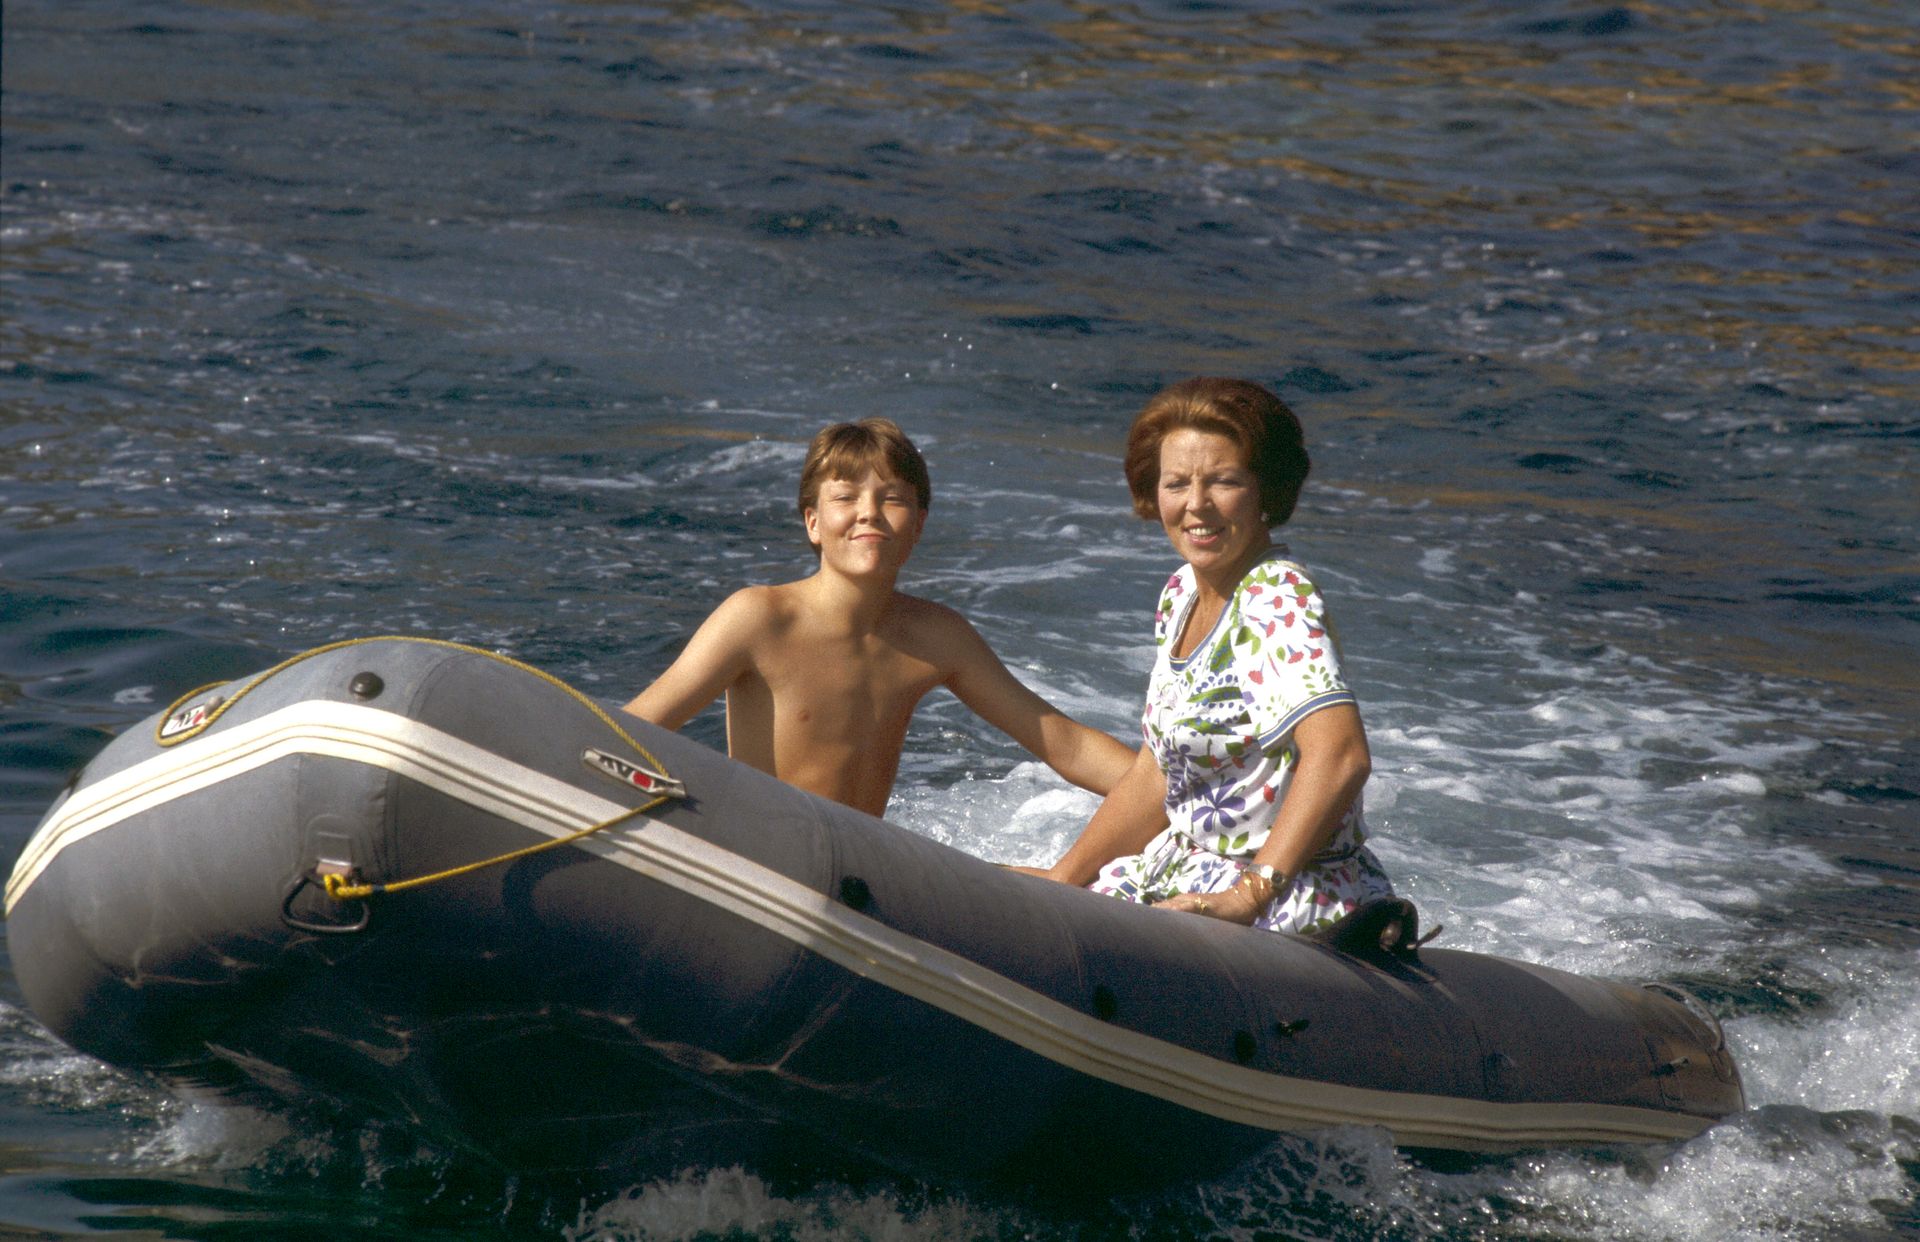 Ook in 1984 brengt het koninklijk gezin de zomervakantie in Italië door. Constantijn en Beatrix